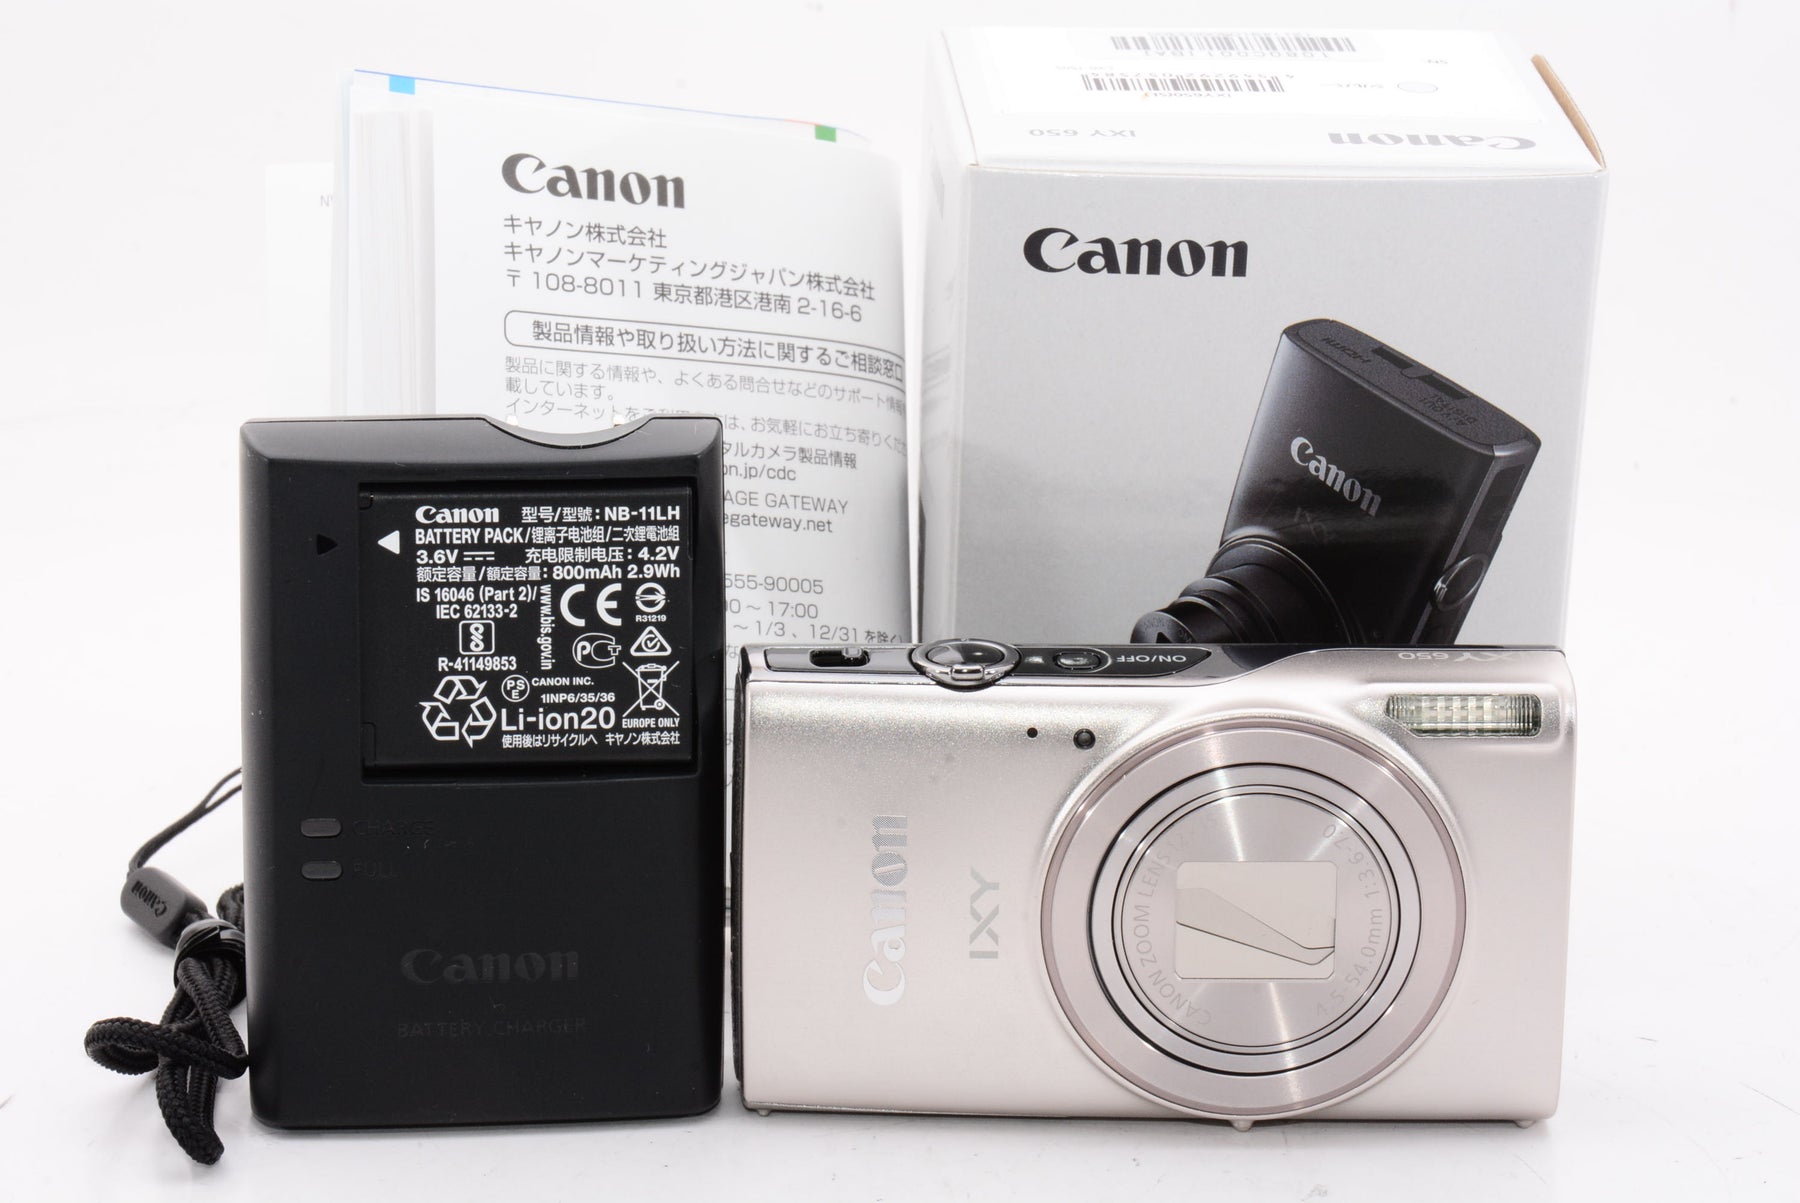 Canon IXY DIGITAL PC1001 ジャンク デジタルカメラレトロなデジカメ